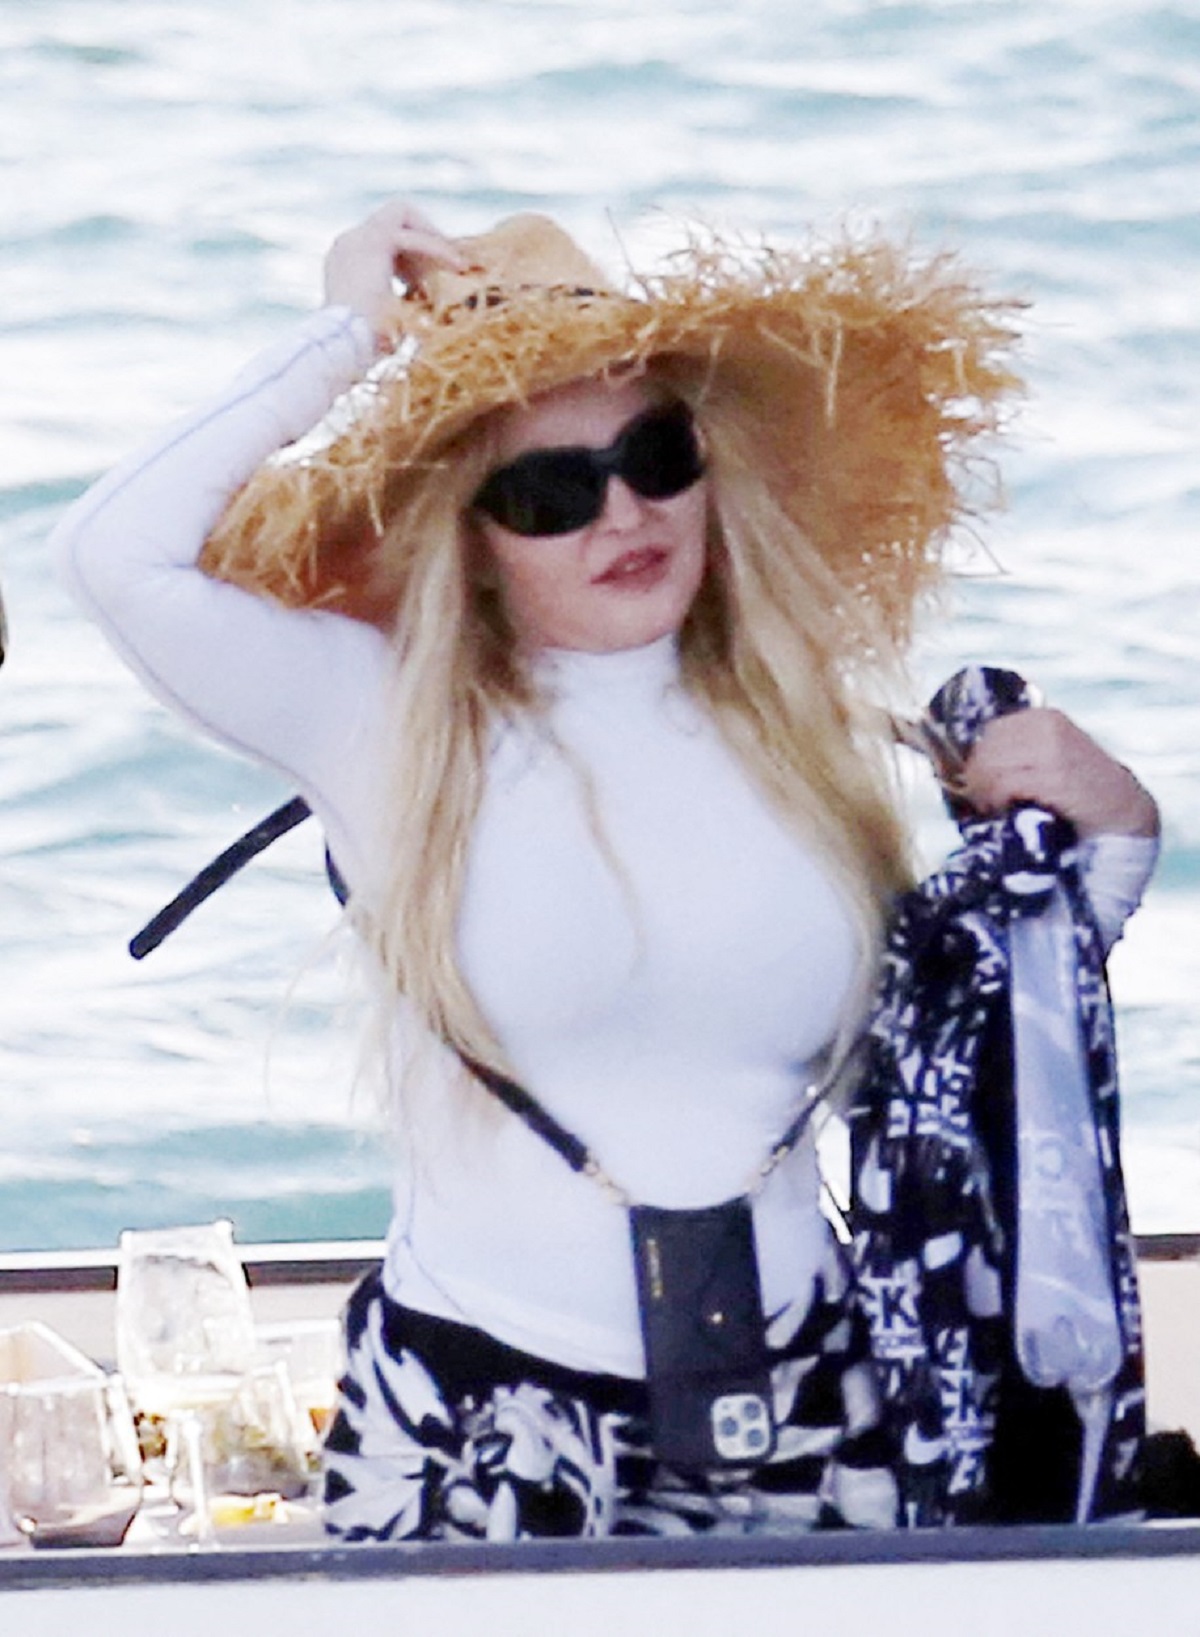 Madonna a mers în vacanță în Italia și a purtat o bluză albă cu o pălărie de paie